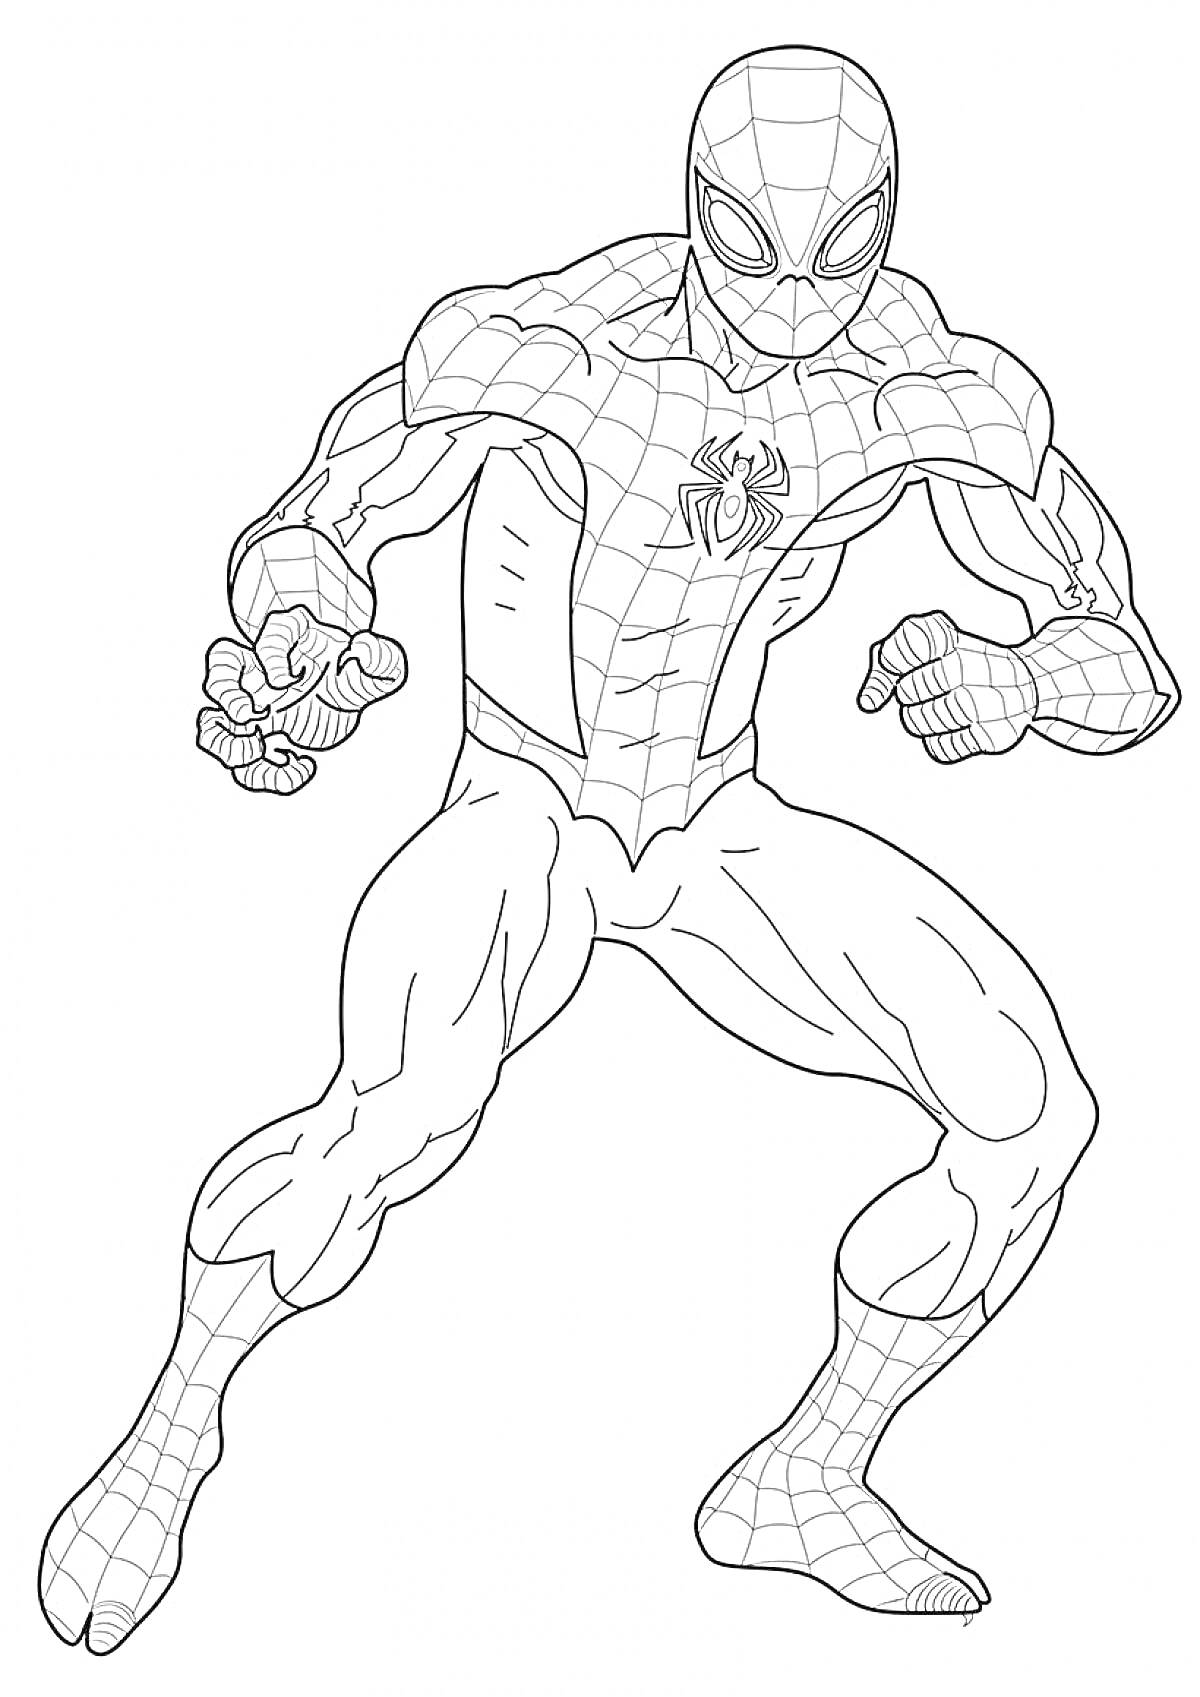 Раскраска Человек-паук в полуприседе, в костюме с паутиной